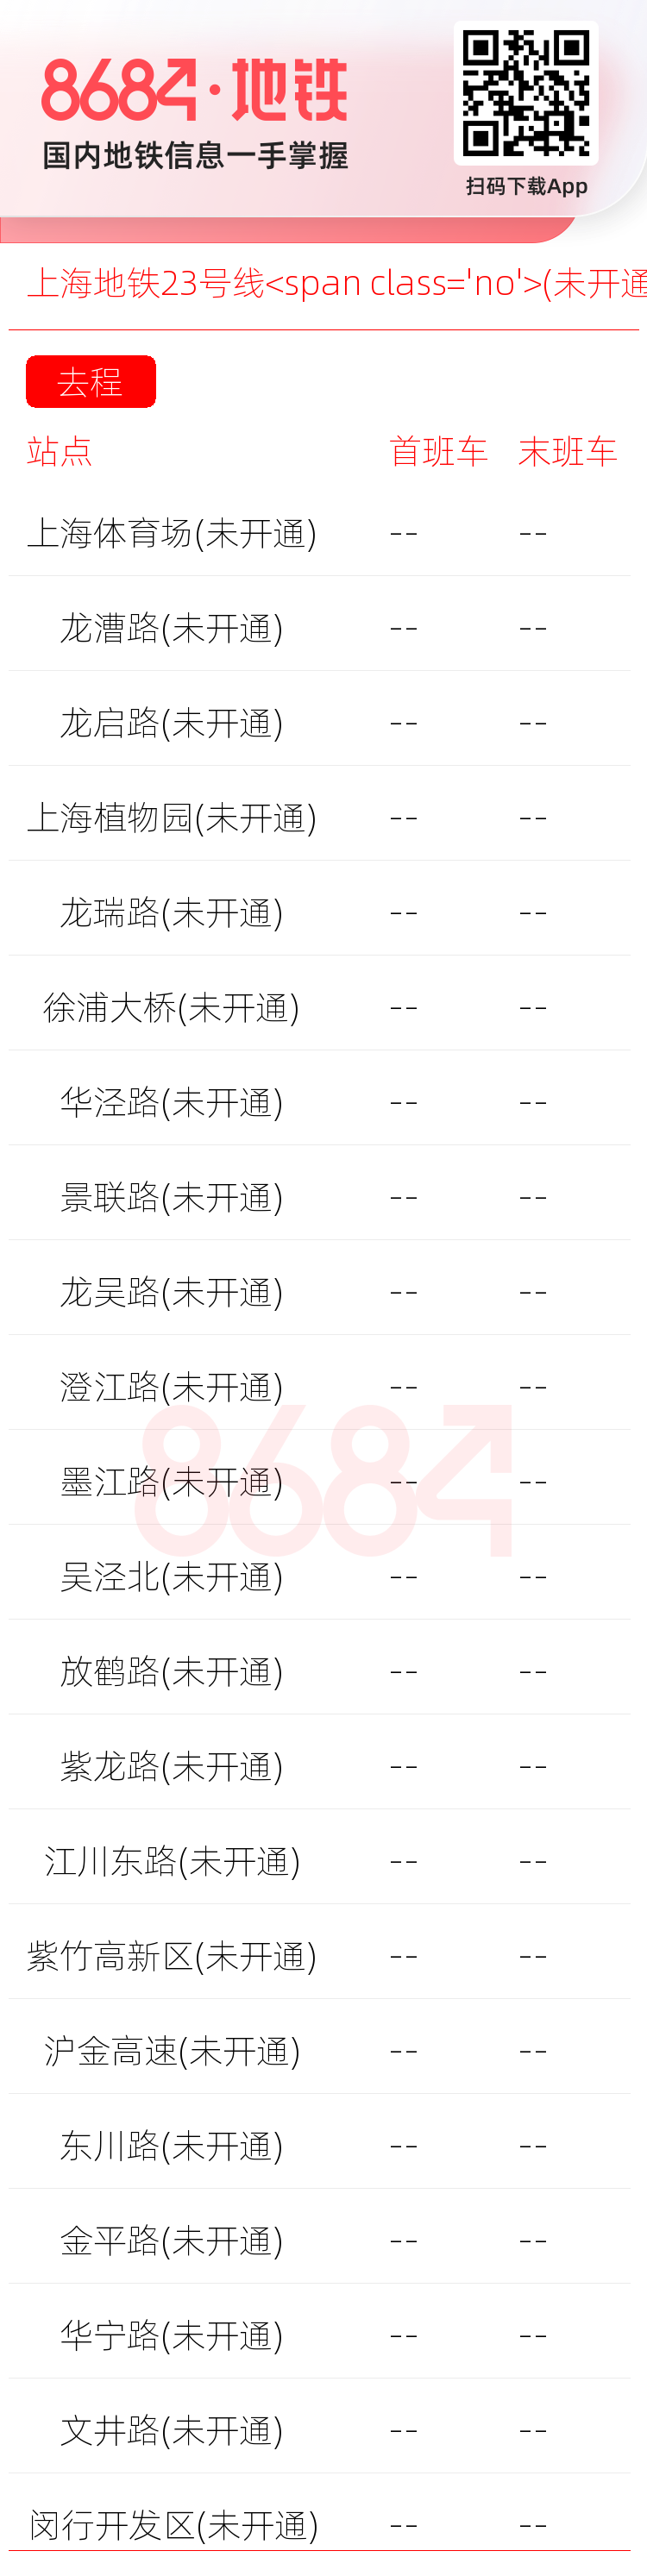 上海地铁23号线<span class='no'>(未开通)</span>运营时间表